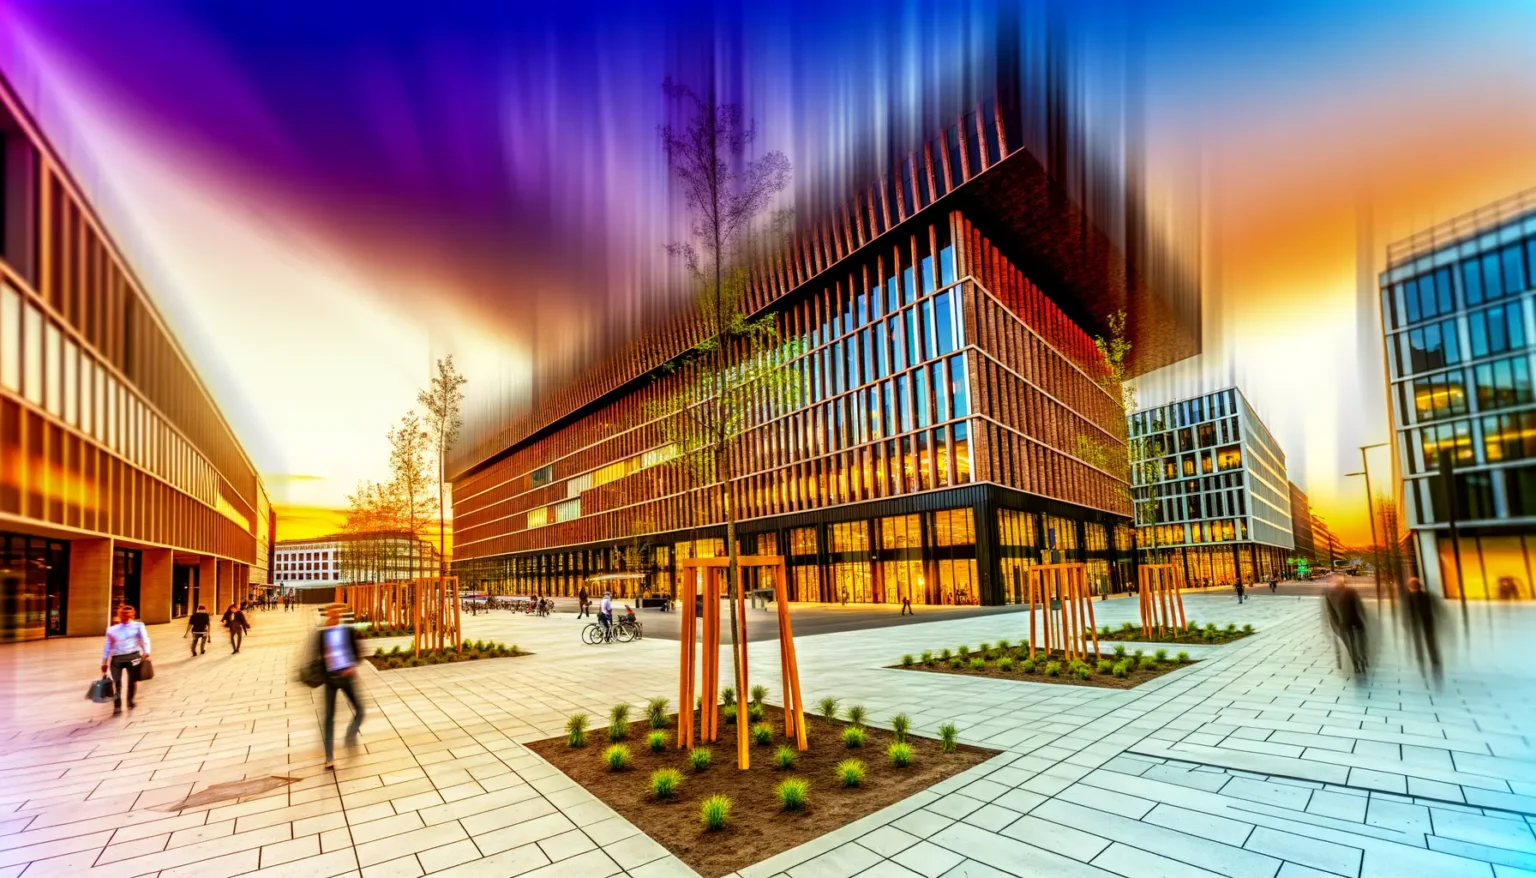 Moderne Architektur von städtischen Bürogebäuden bei Abenddämmerung mit langzeitbelichteten Bewegungsunschärfen von Passanten auf einem Platz mit gepflastertem Boden und begrünten Bereichen. Das farbenfrohe Himmel mit orange-blauen Streifen verleiht dem Bild eine dynamische Atmosphäre.